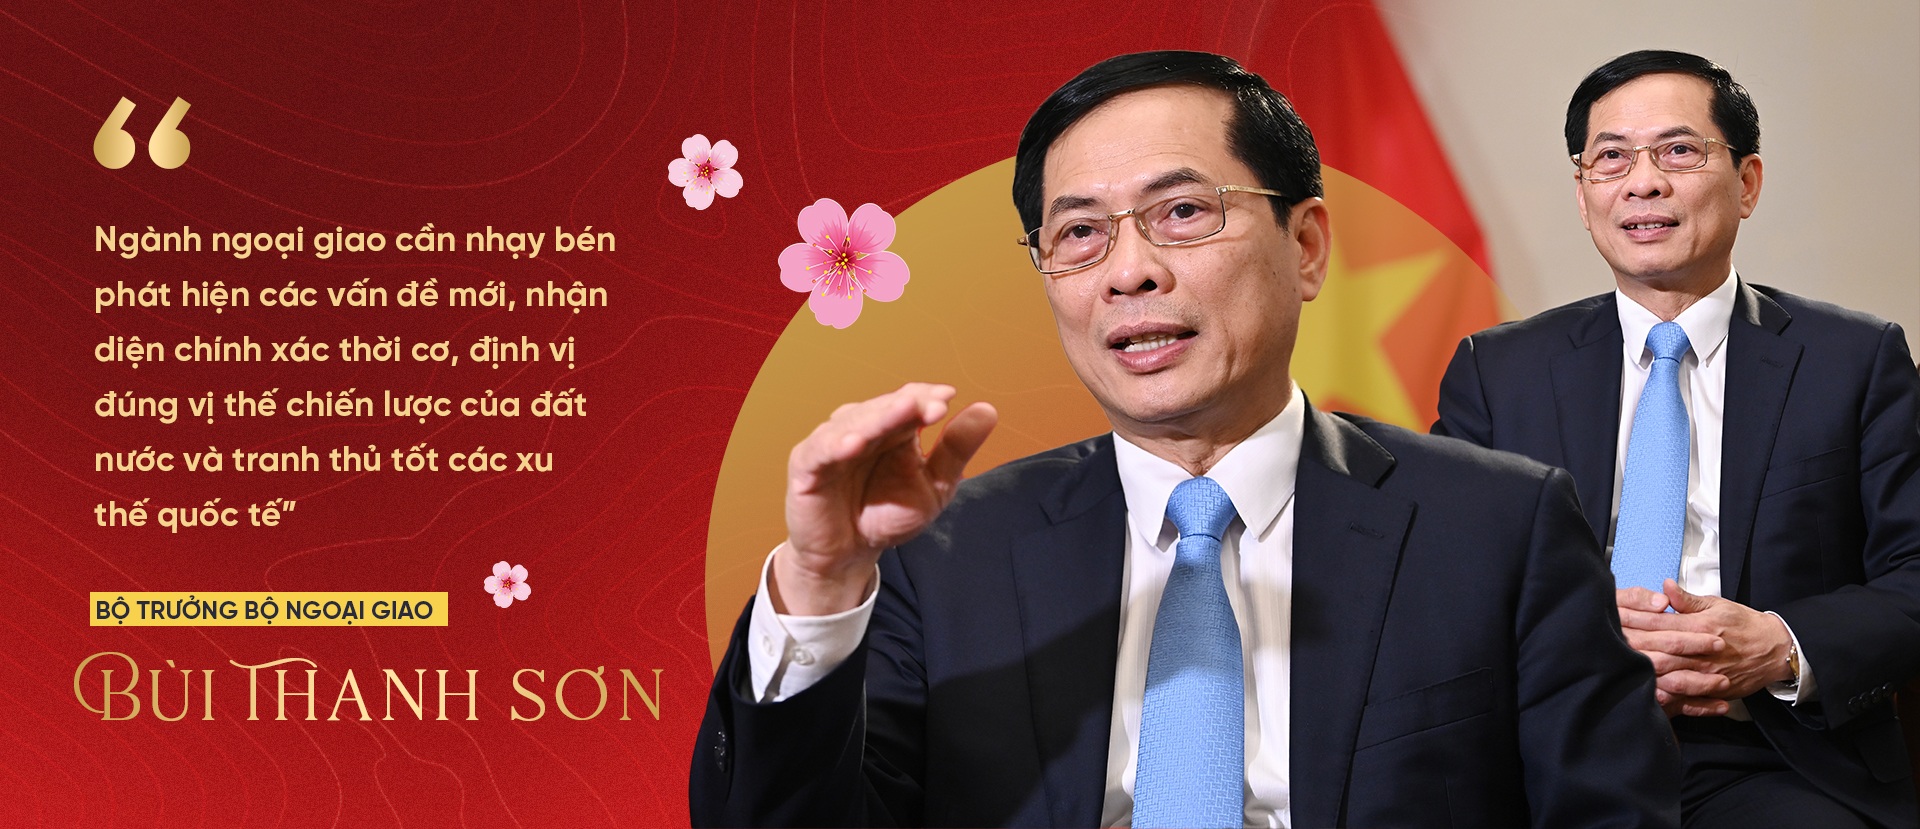 Bộ trưởng Bùi Thanh Sơn: Ngoại giao cần vượt ra khỏi tư duy lối mòn - 9